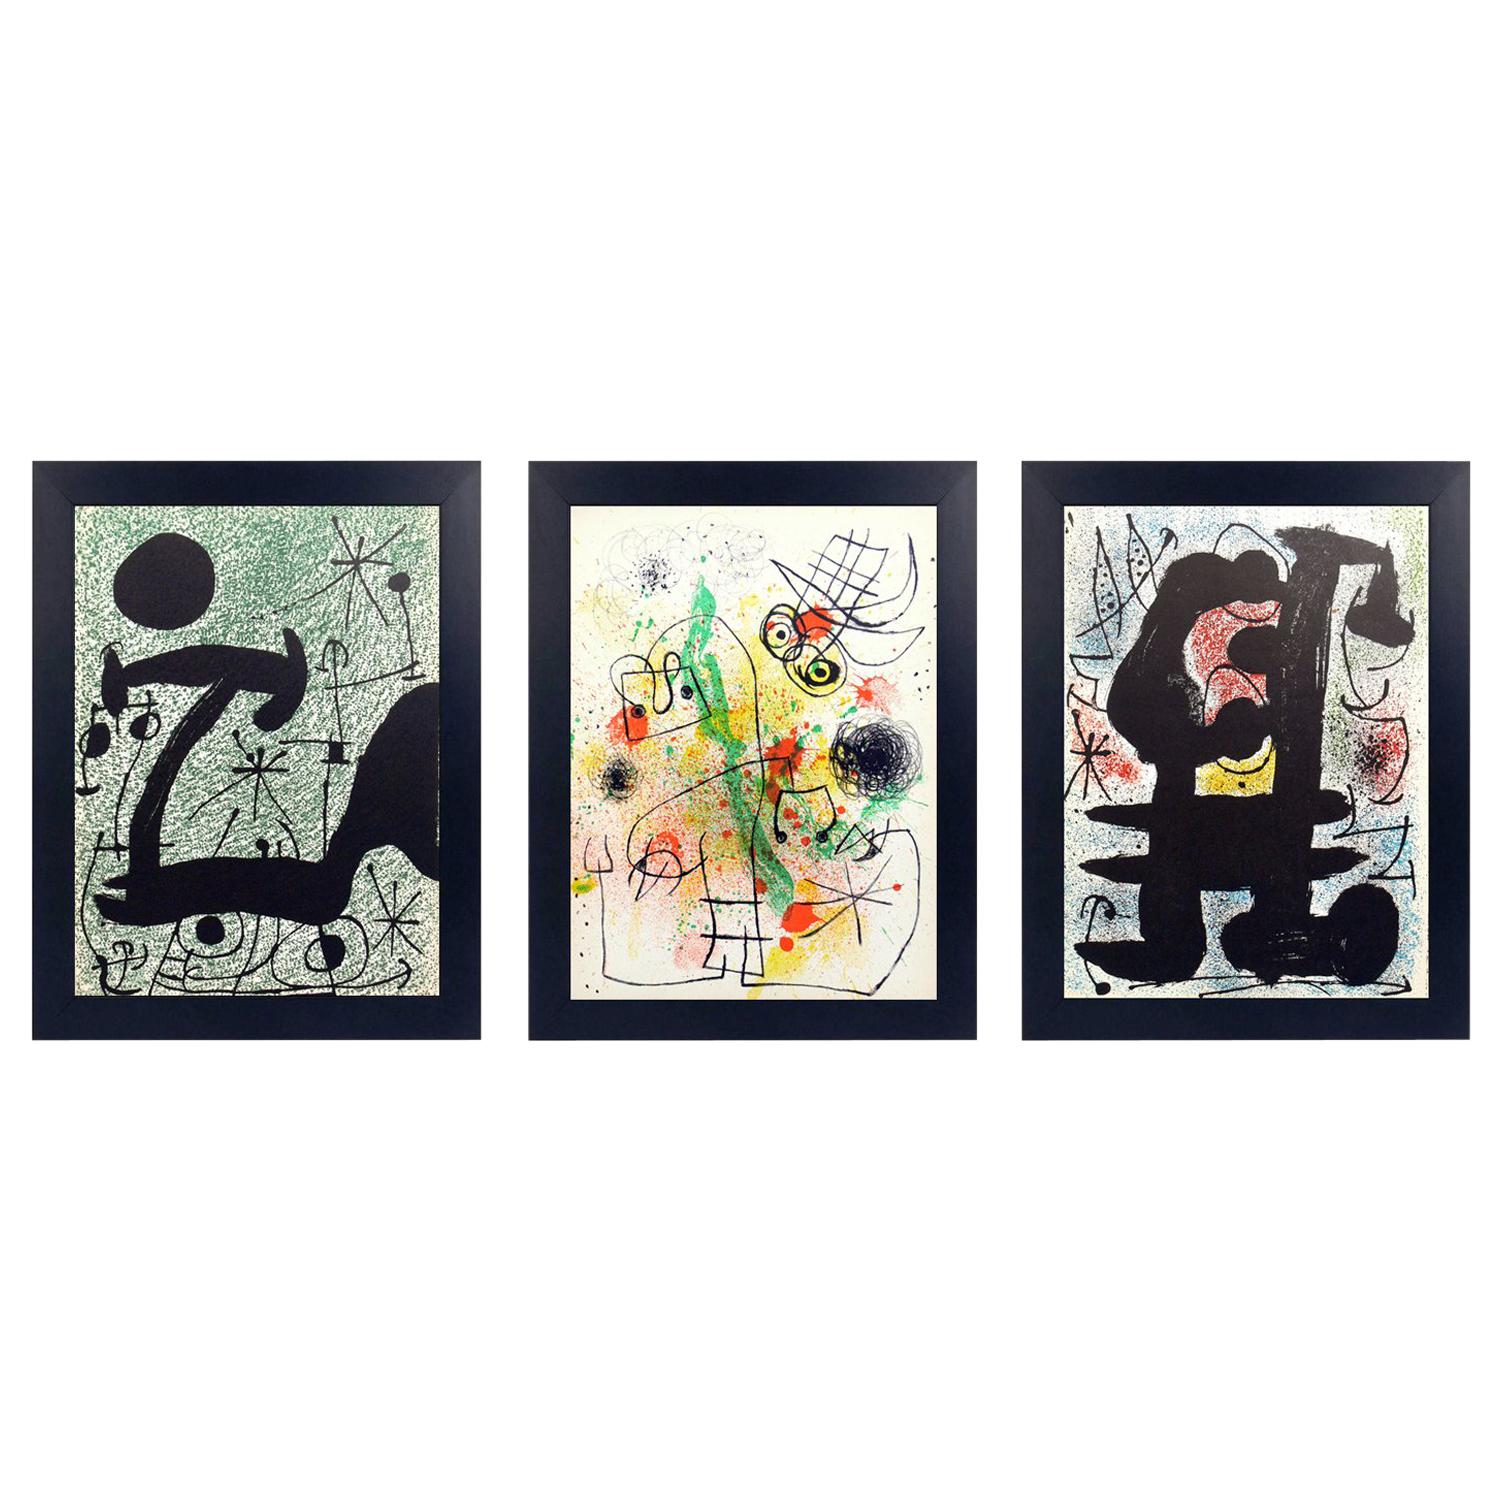 Sélection de lithographies en couleurs de Joan Miro, France, vers les années 1960. Nous avons acheté un groupe de ces lithographies en couleur provenant de la succession d'un couple qui a vécu en France de 1951 à 1983. Elles proviennent très